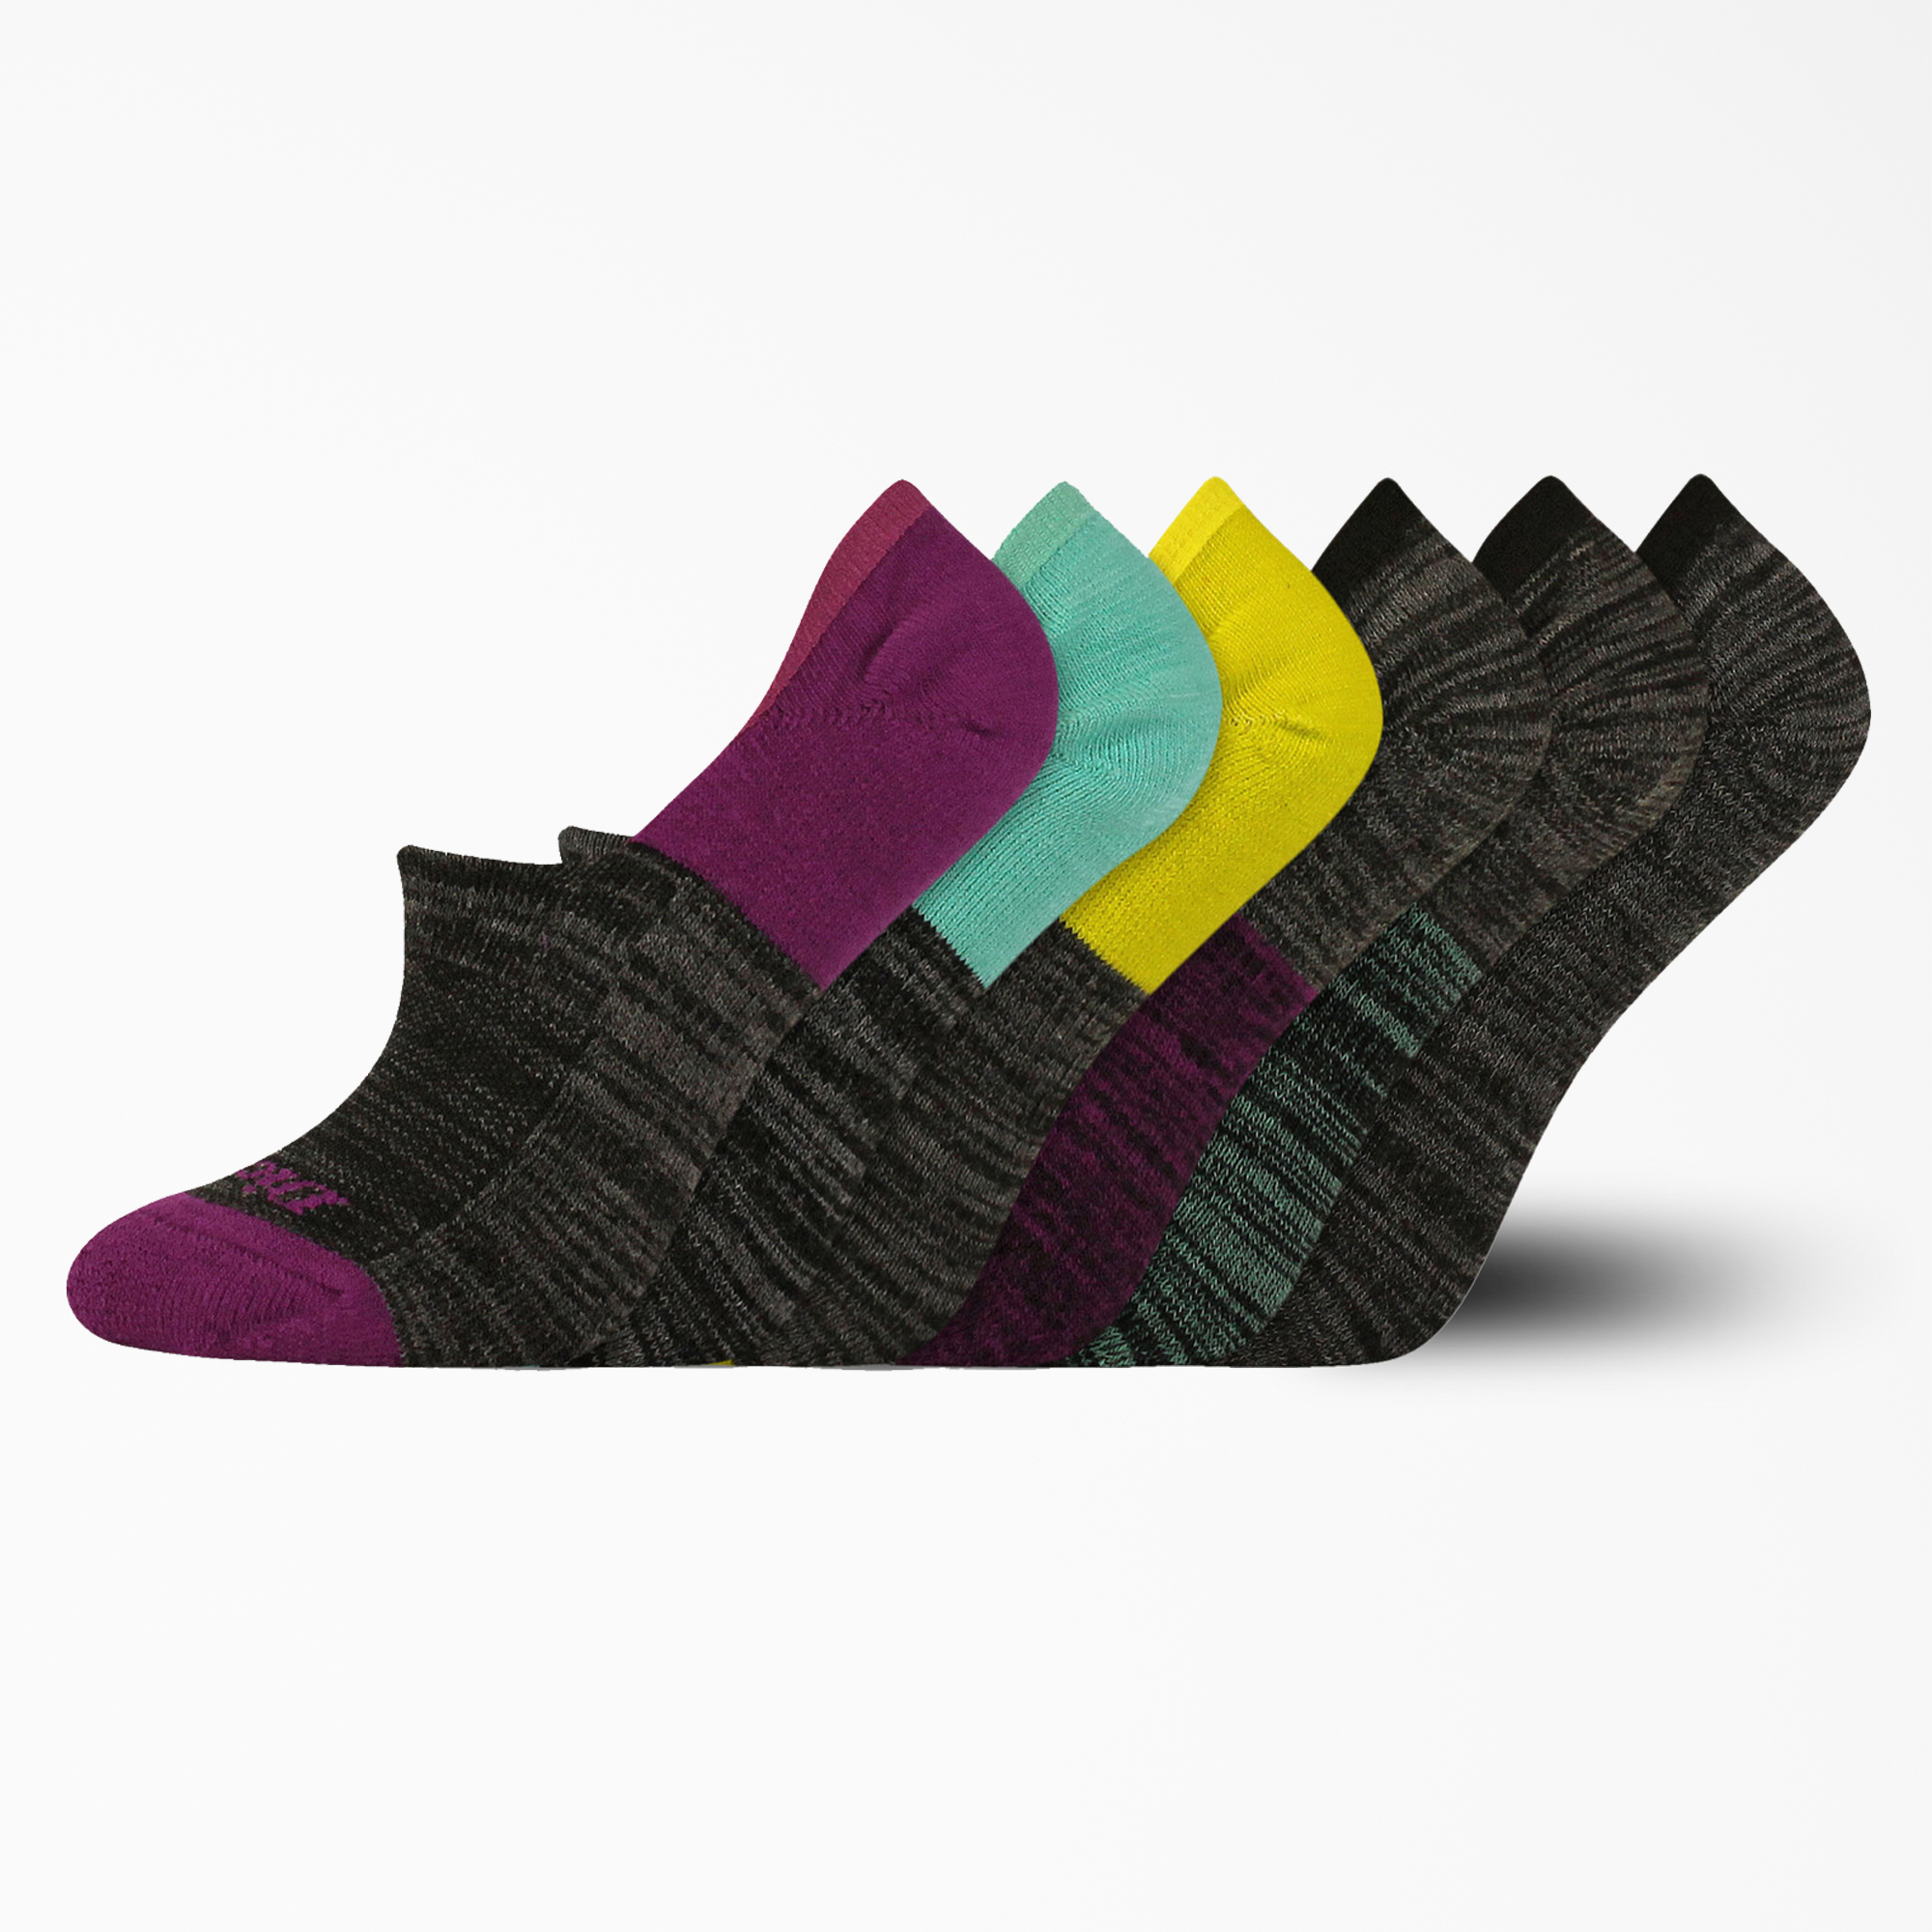 Women's Dri-Tech Liner Socks, 6-Pack - Black (BK)